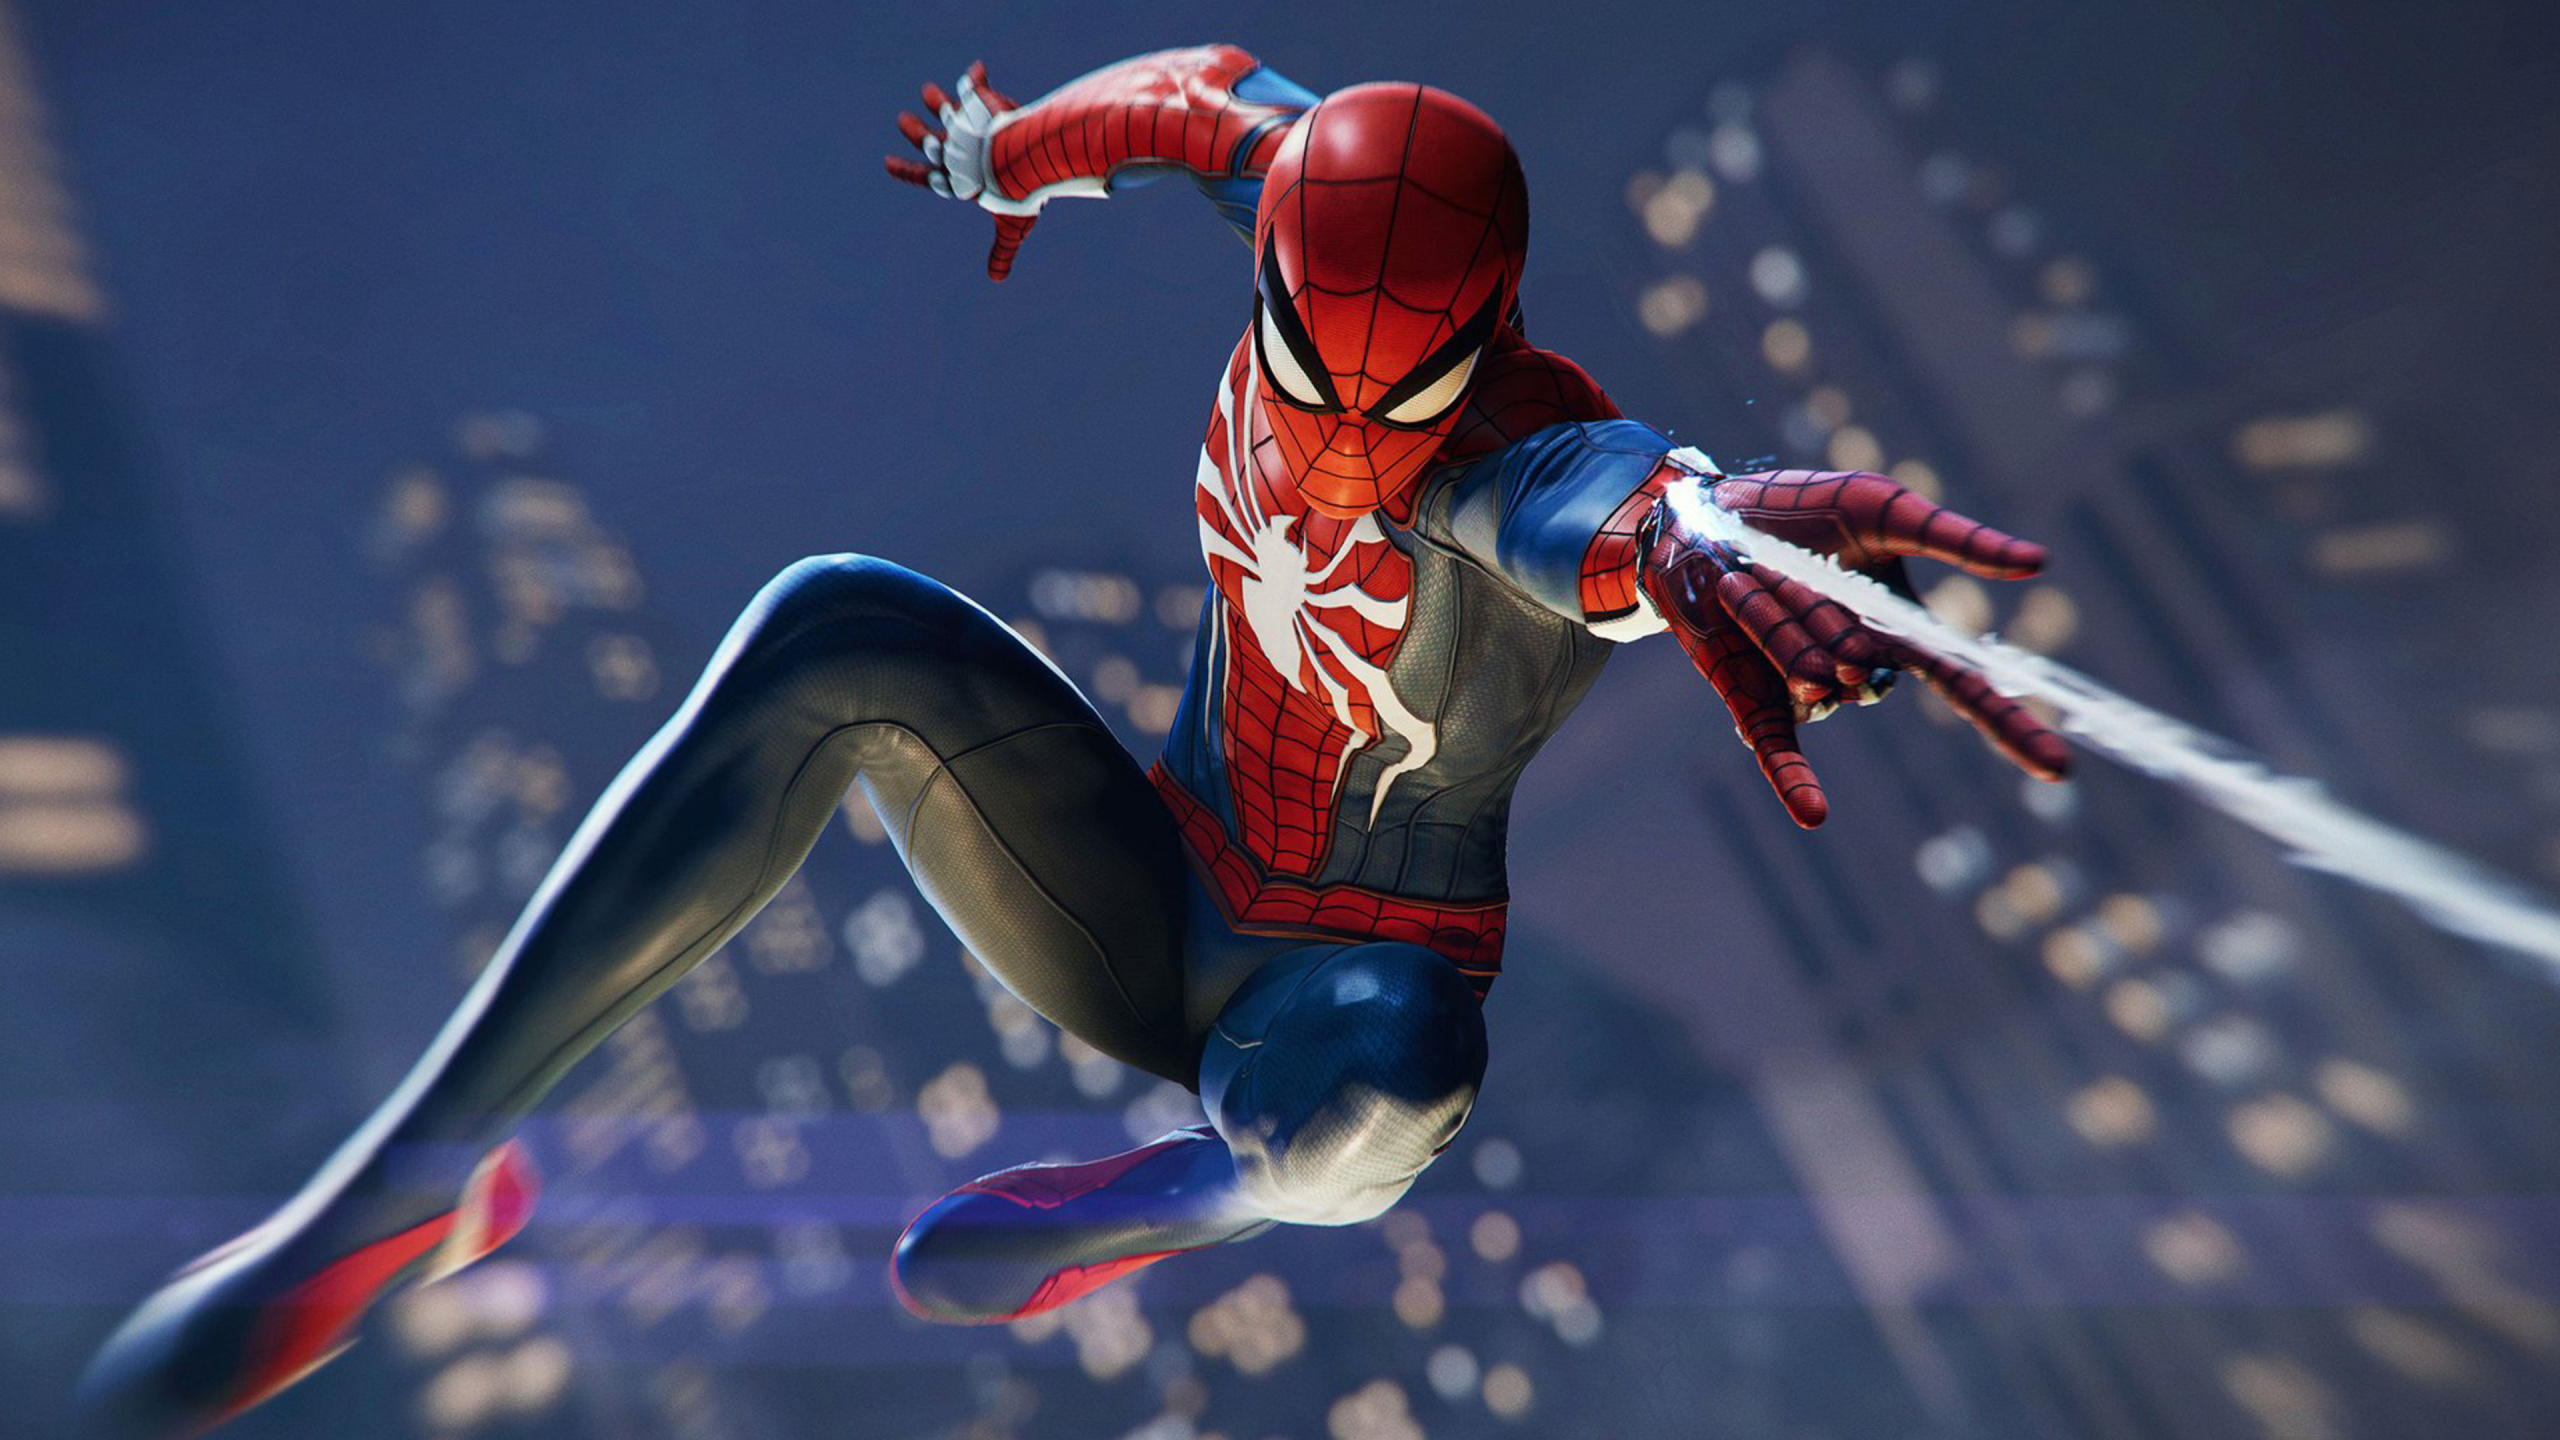 Spider-man, Insomniac Games, Superhelden, Action-Figur, Playstation 4. Wallpaper in 2560x1440 Resolution